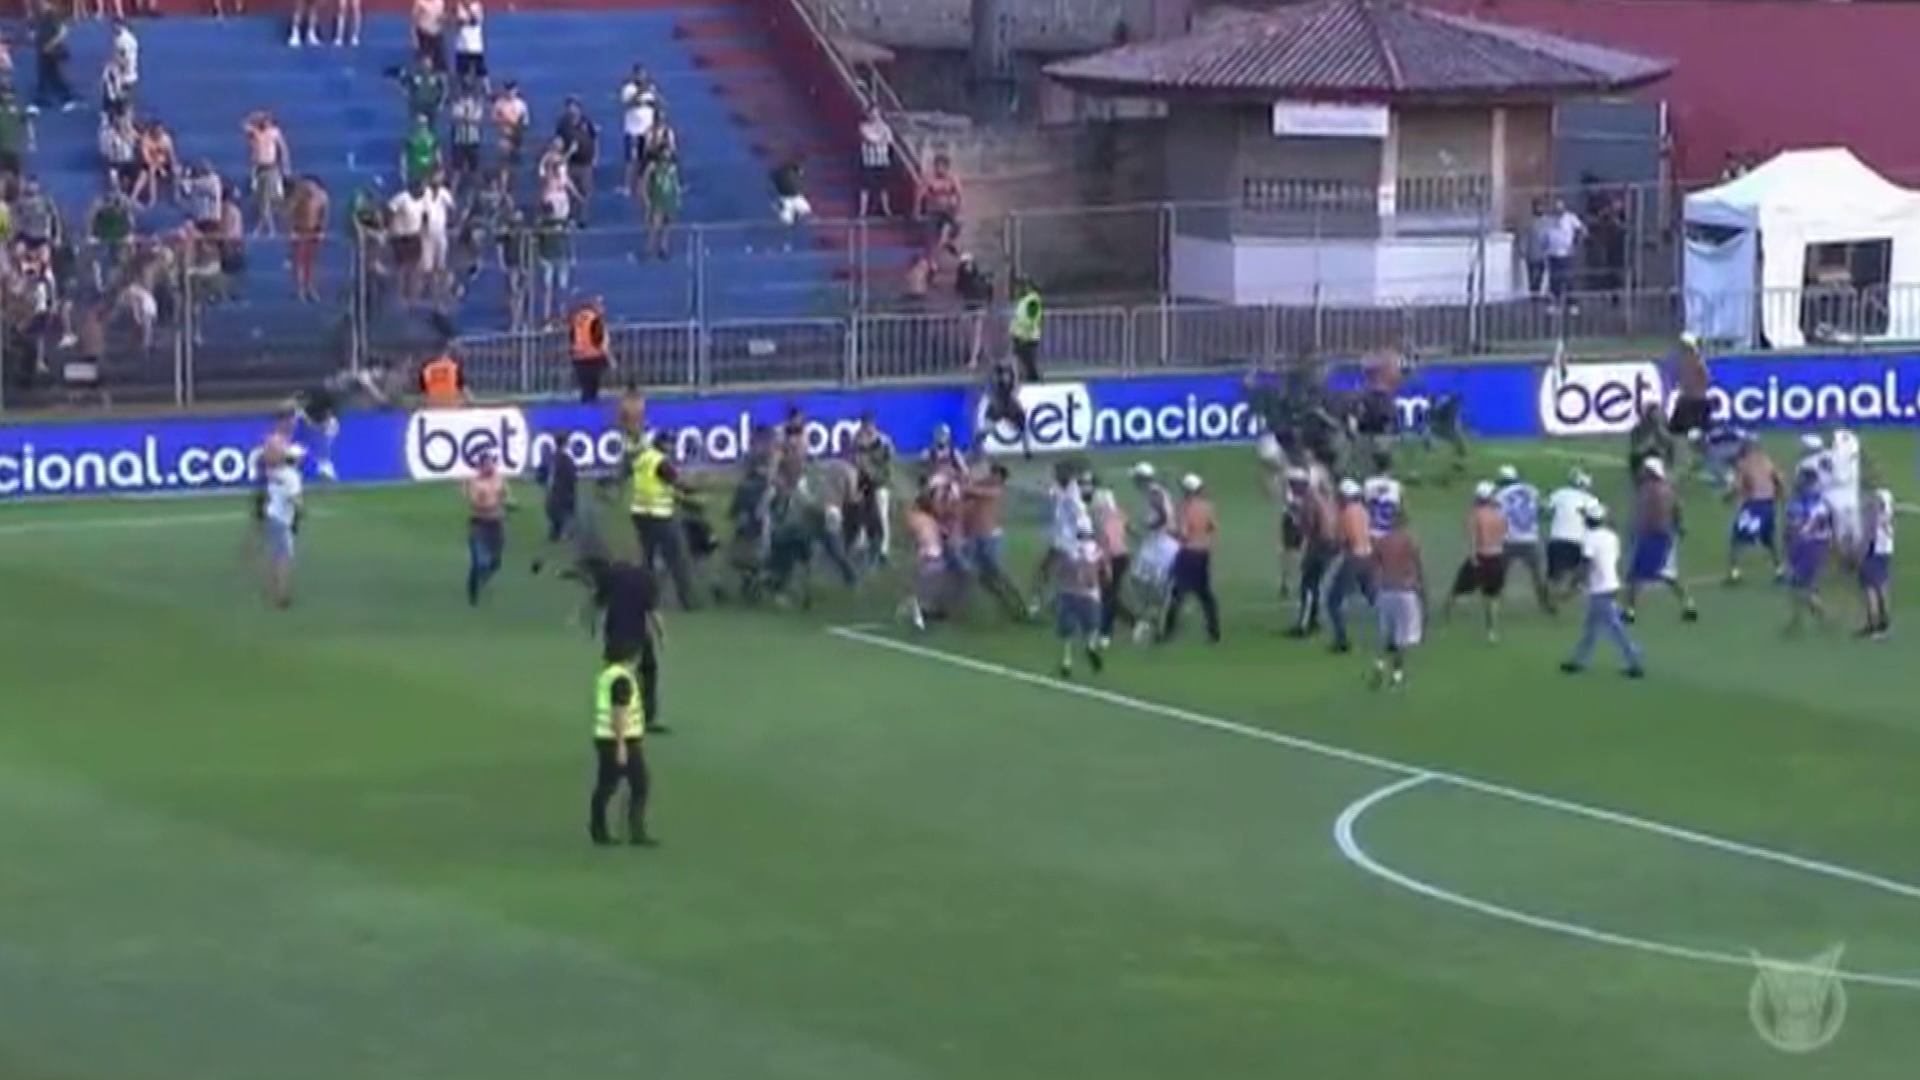 Tömegverekedés tört ki a gól után + videó